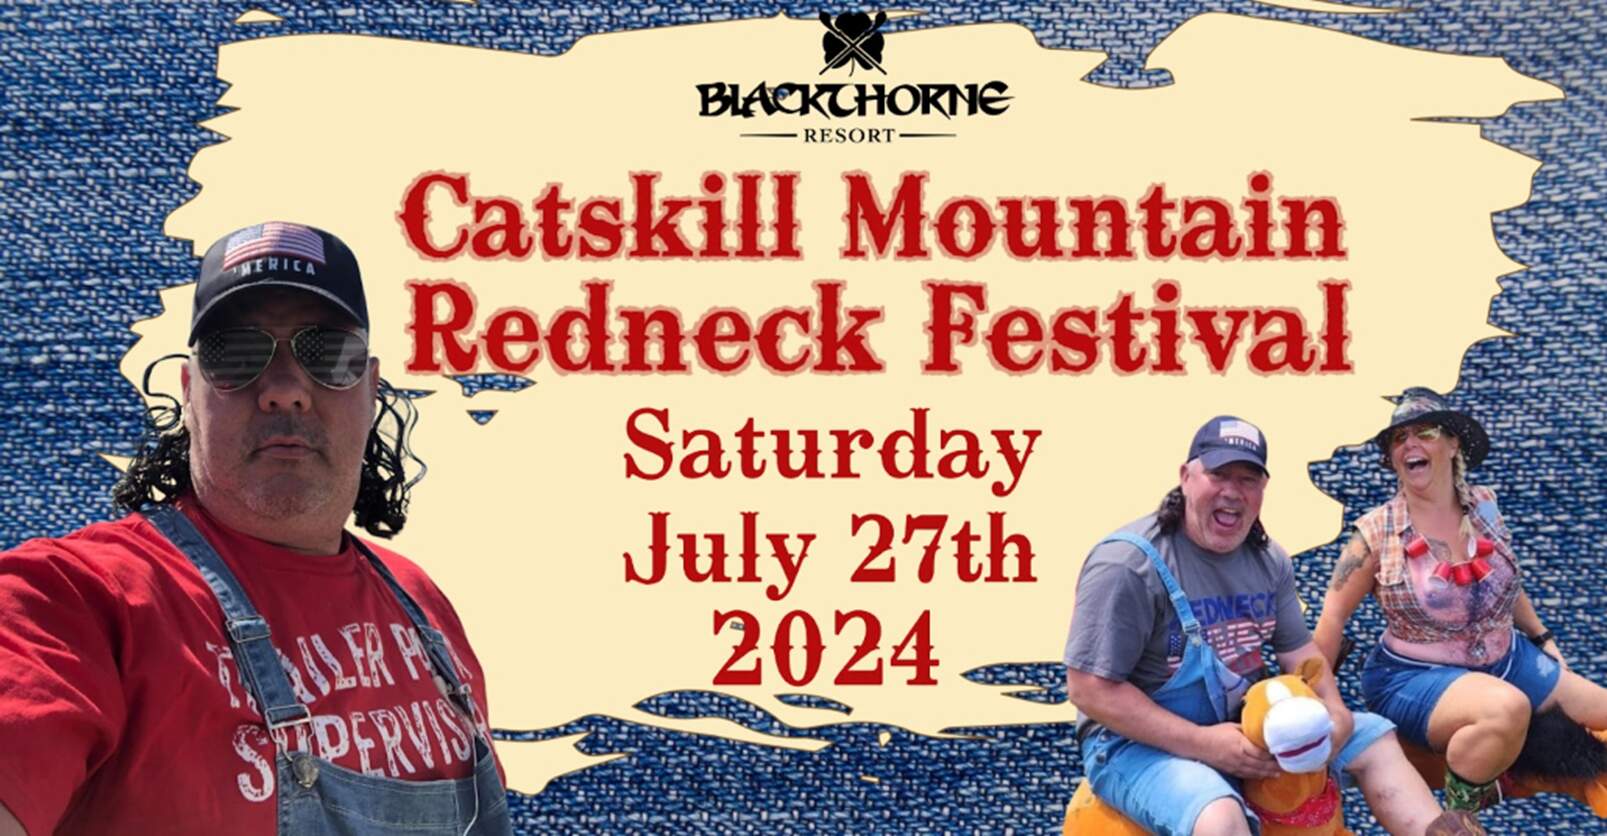 Catskill Mountain Redneck Festival 2024 Blackthorne Resort Greene